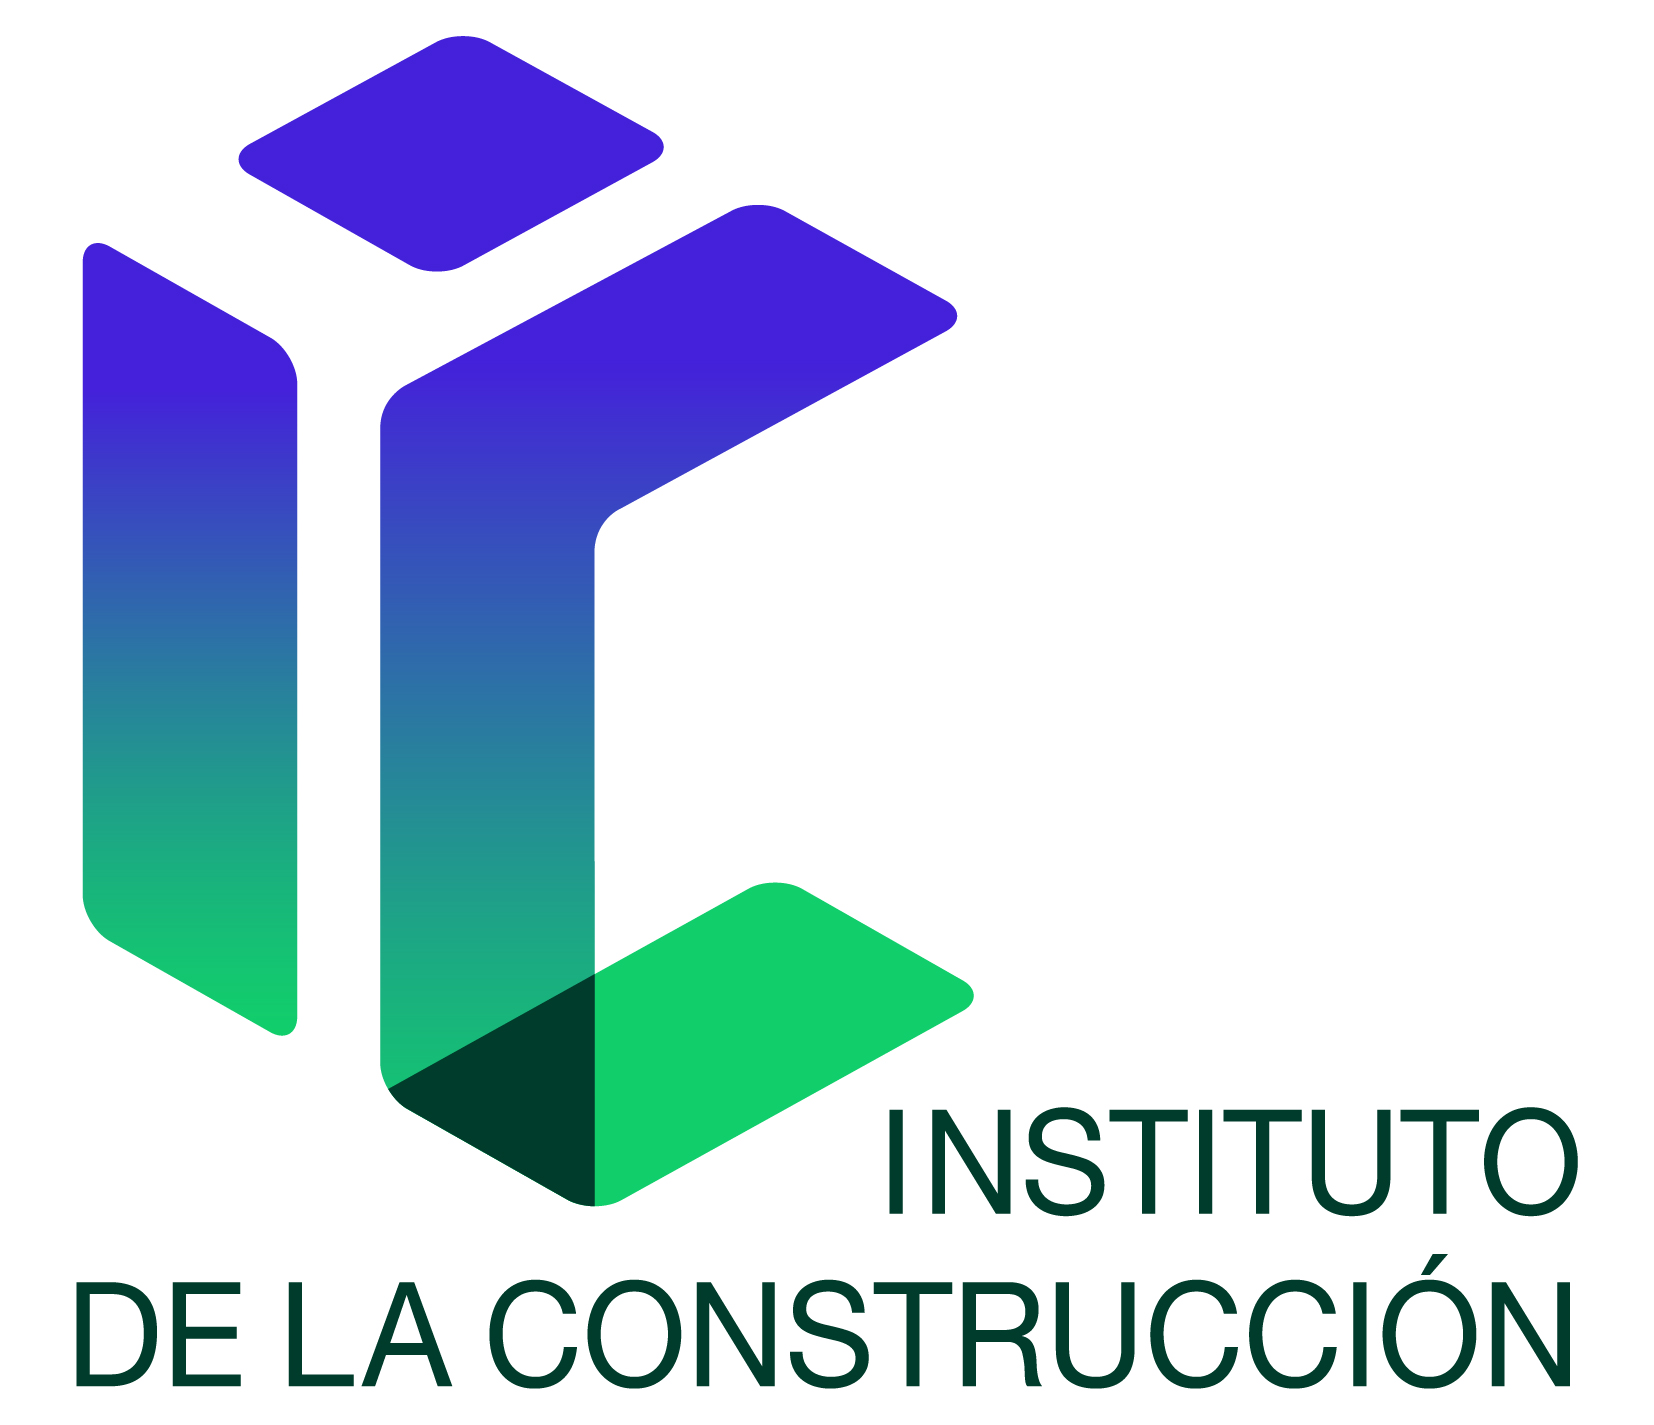 Instituto de la Construcción: 24 años articulando proyectos para el crecimiento de la industria